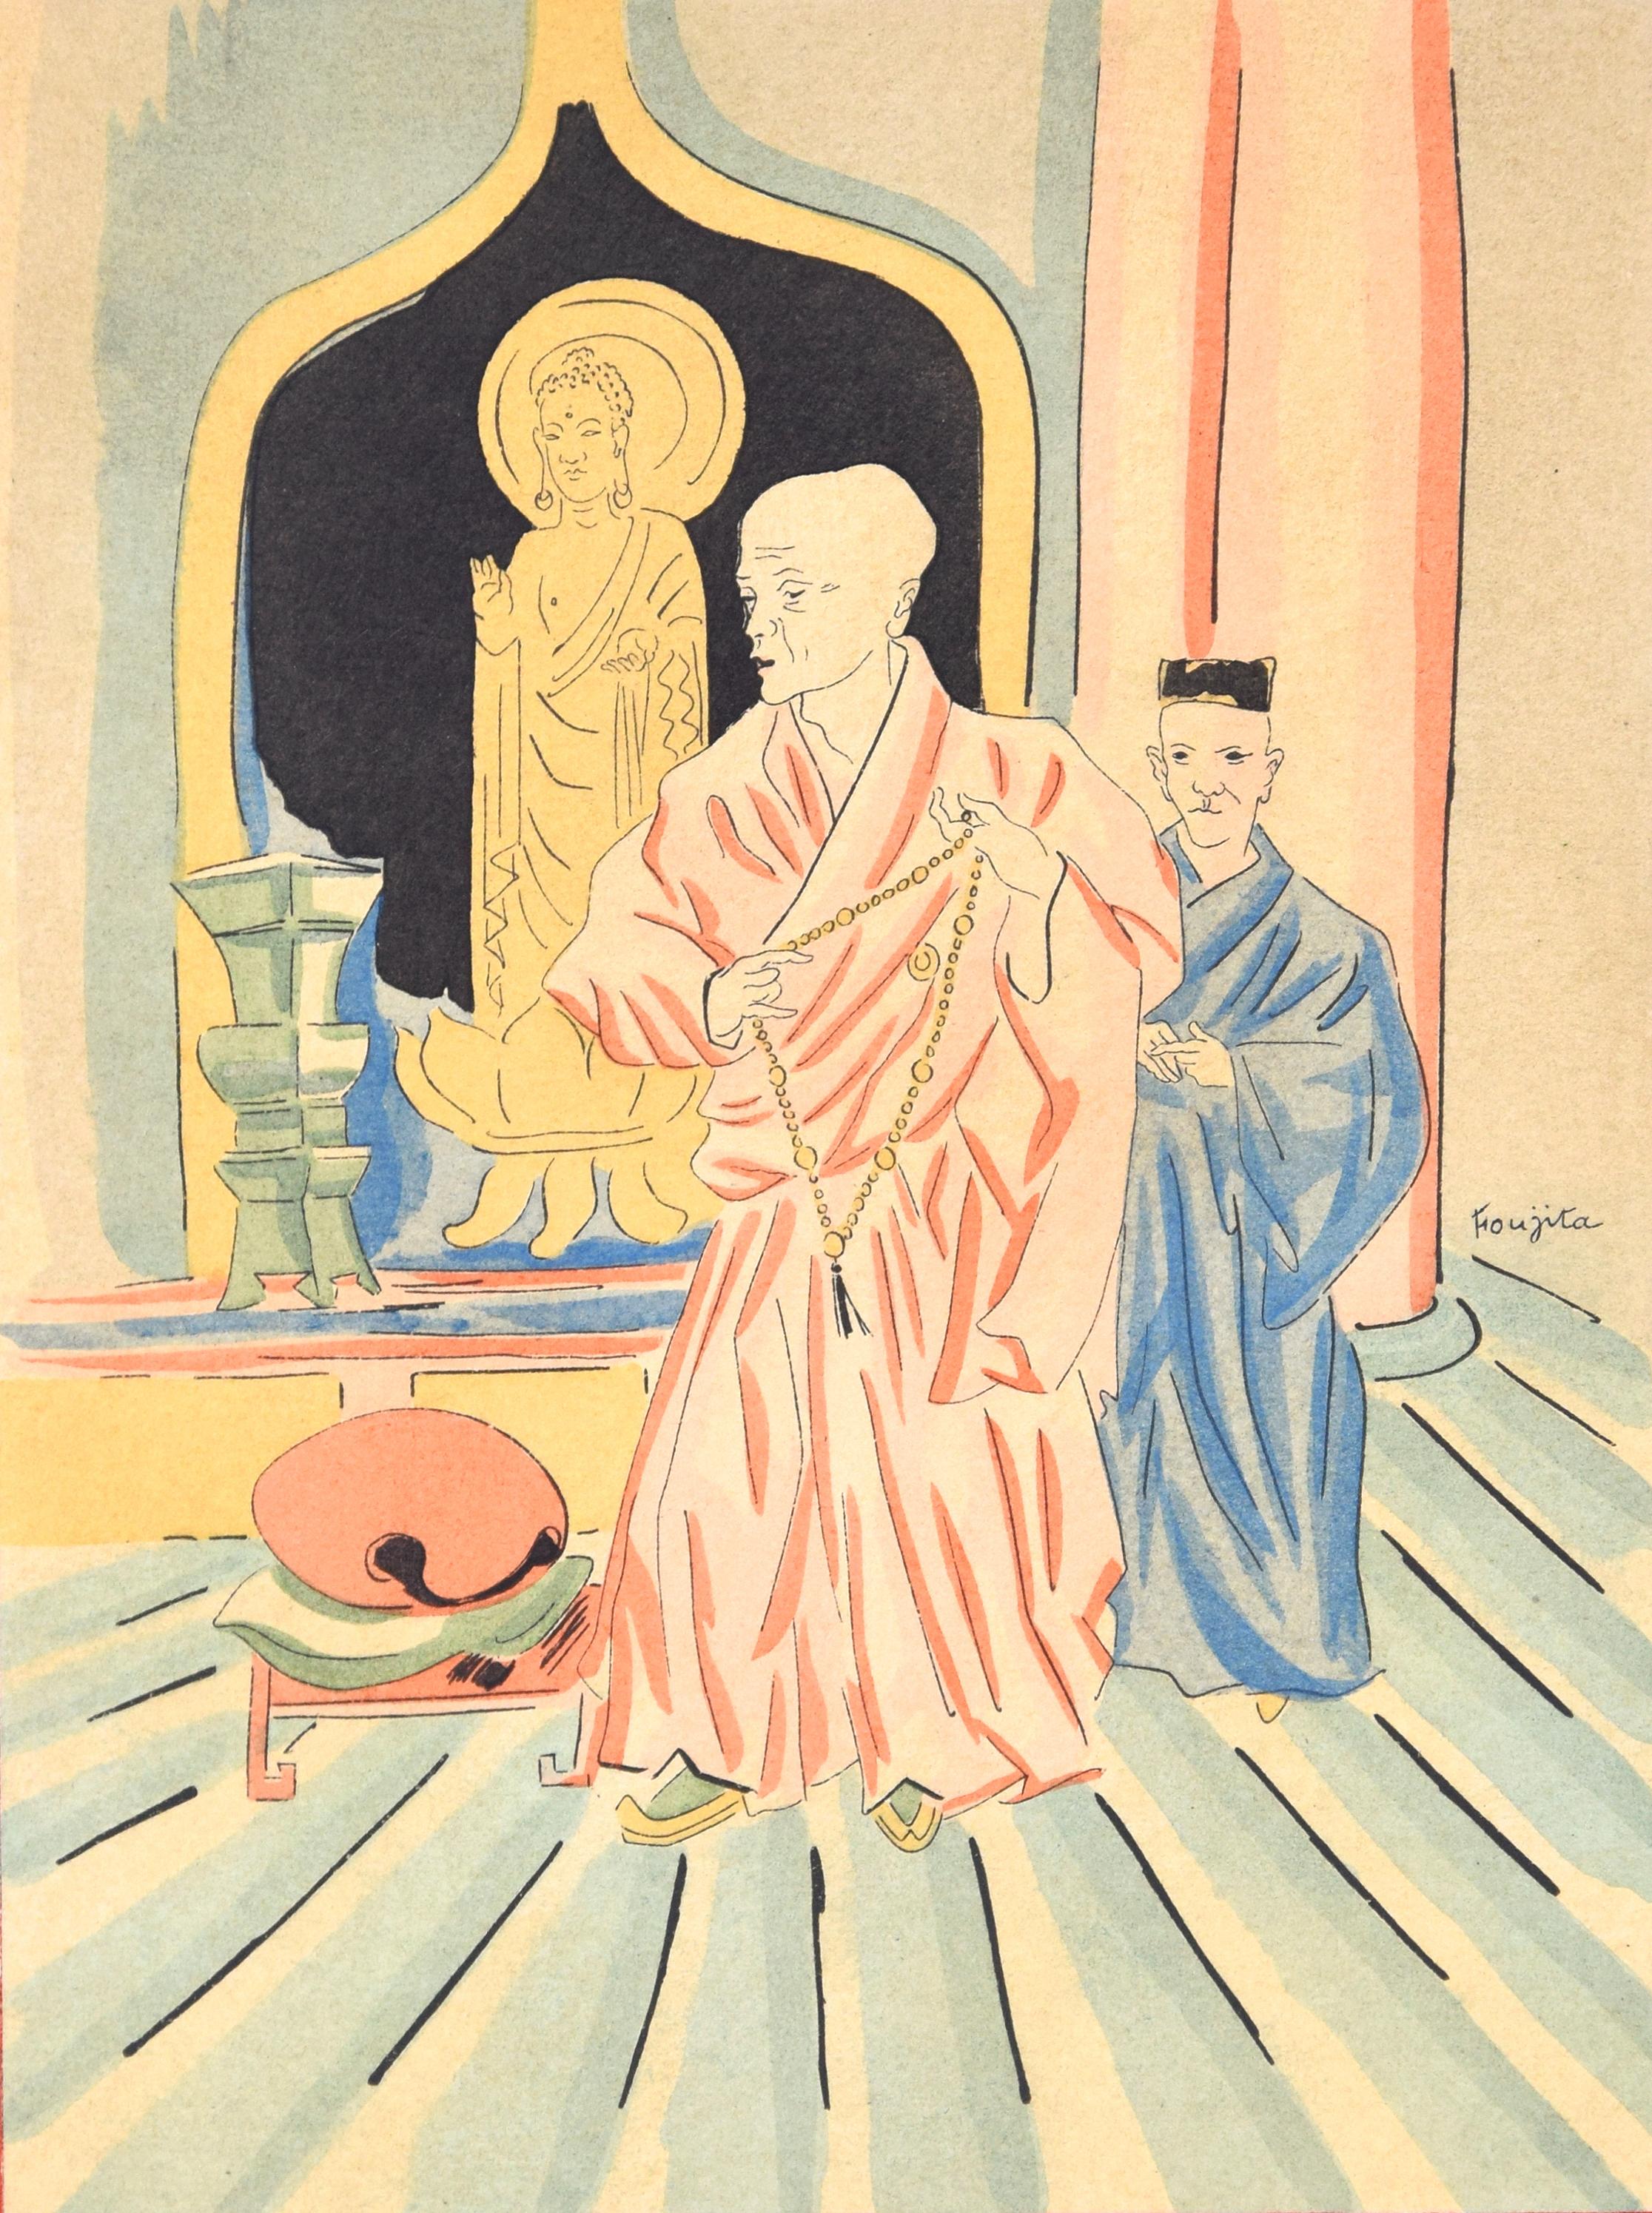 Leonard Tsuguharu Foujita Figurative Print - In a Buddhist Temple - Original Lithograph by L.T. Foujita - 1928